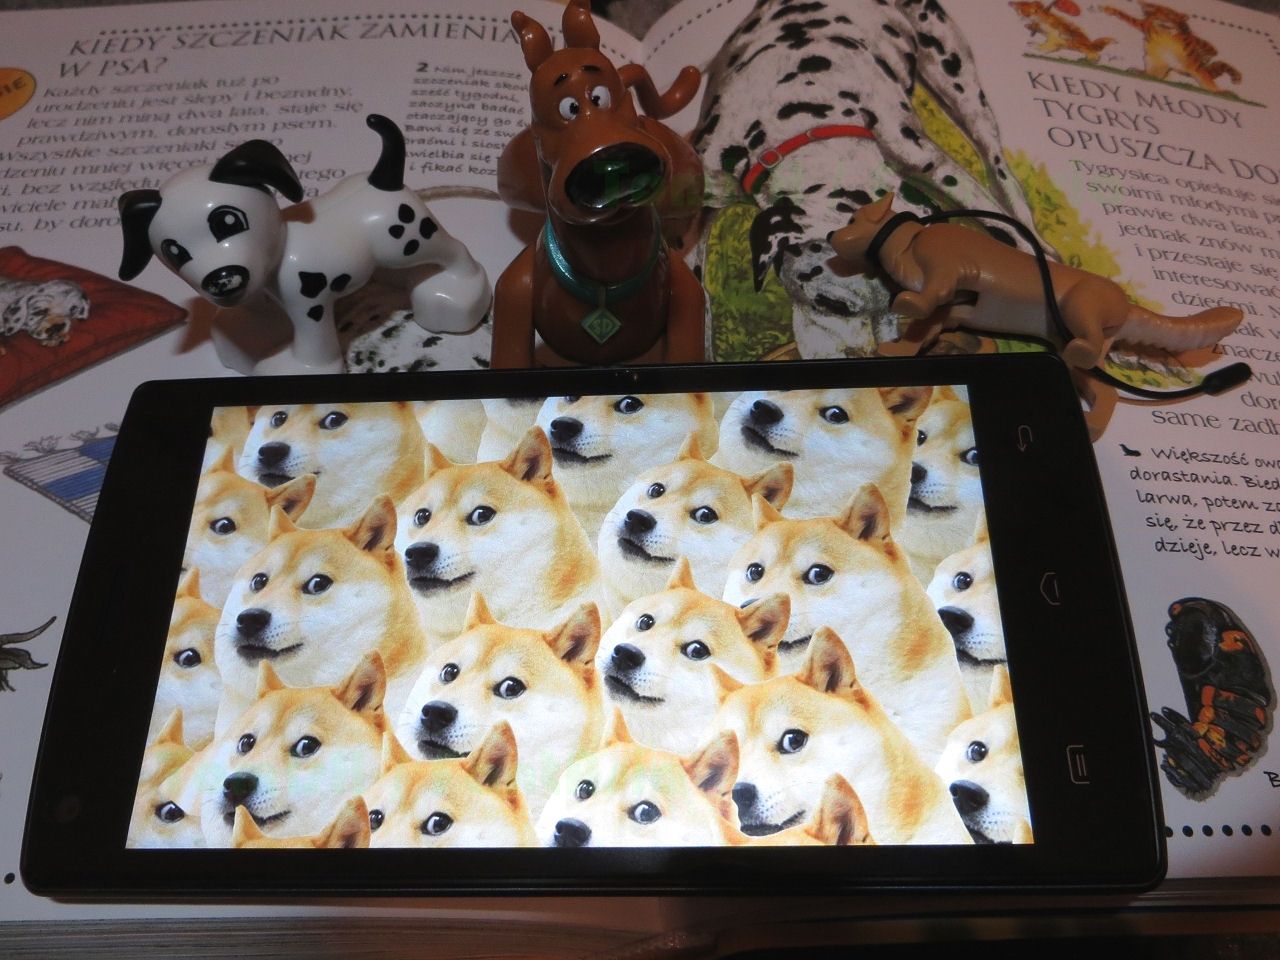 FantAsia: Doogee X5 Max, czyli tani telefon pod psem też znajdzie swoich zwolenników